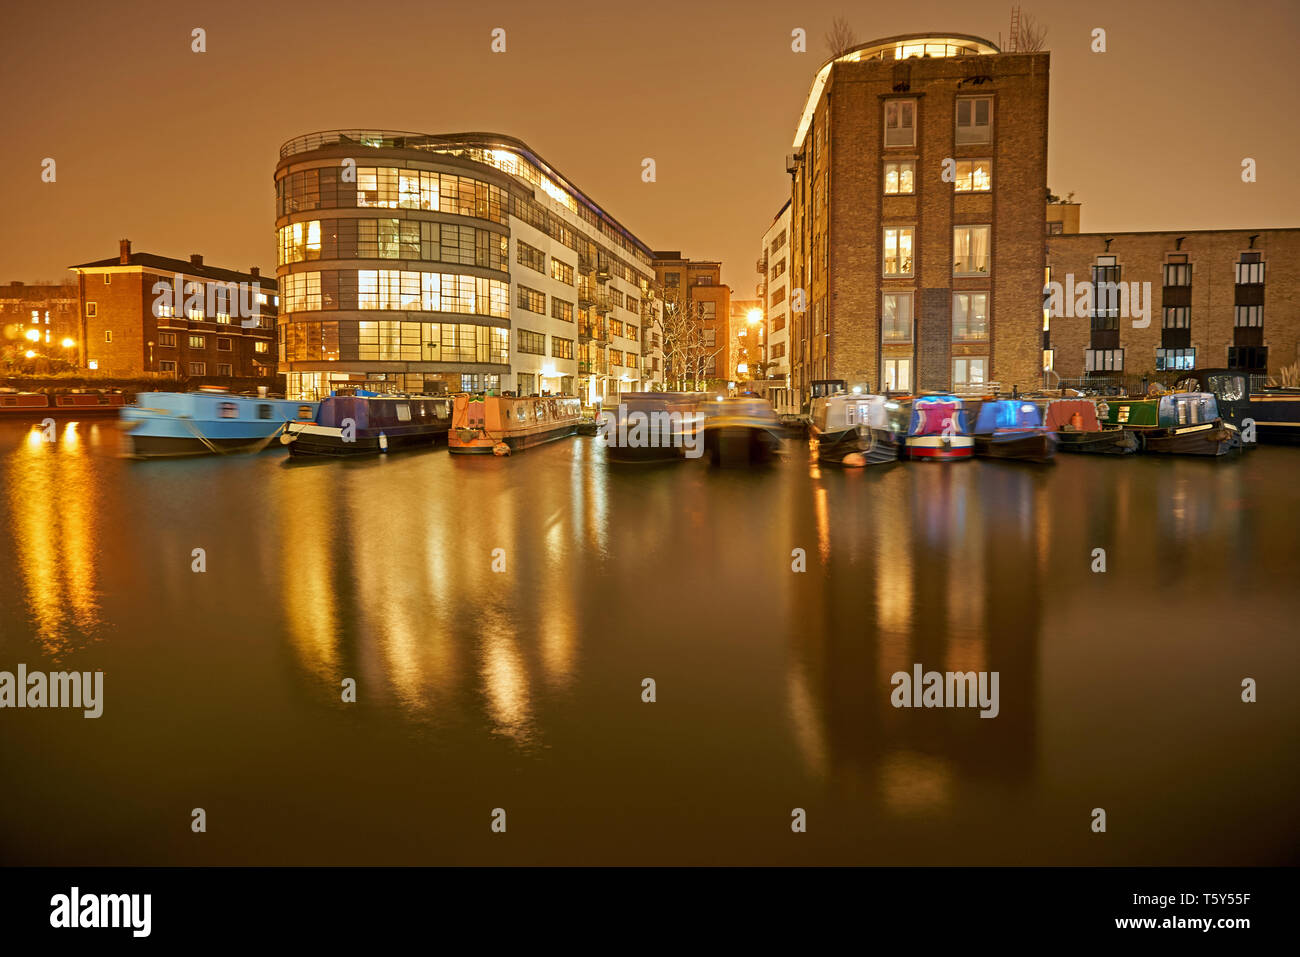 L'exposition photo de nuit longue de bassin Battlebridge sur Regent's Canal, Londres, par des réflexions de narrowboats et bâtiments illuminés dans l'eau Banque D'Images